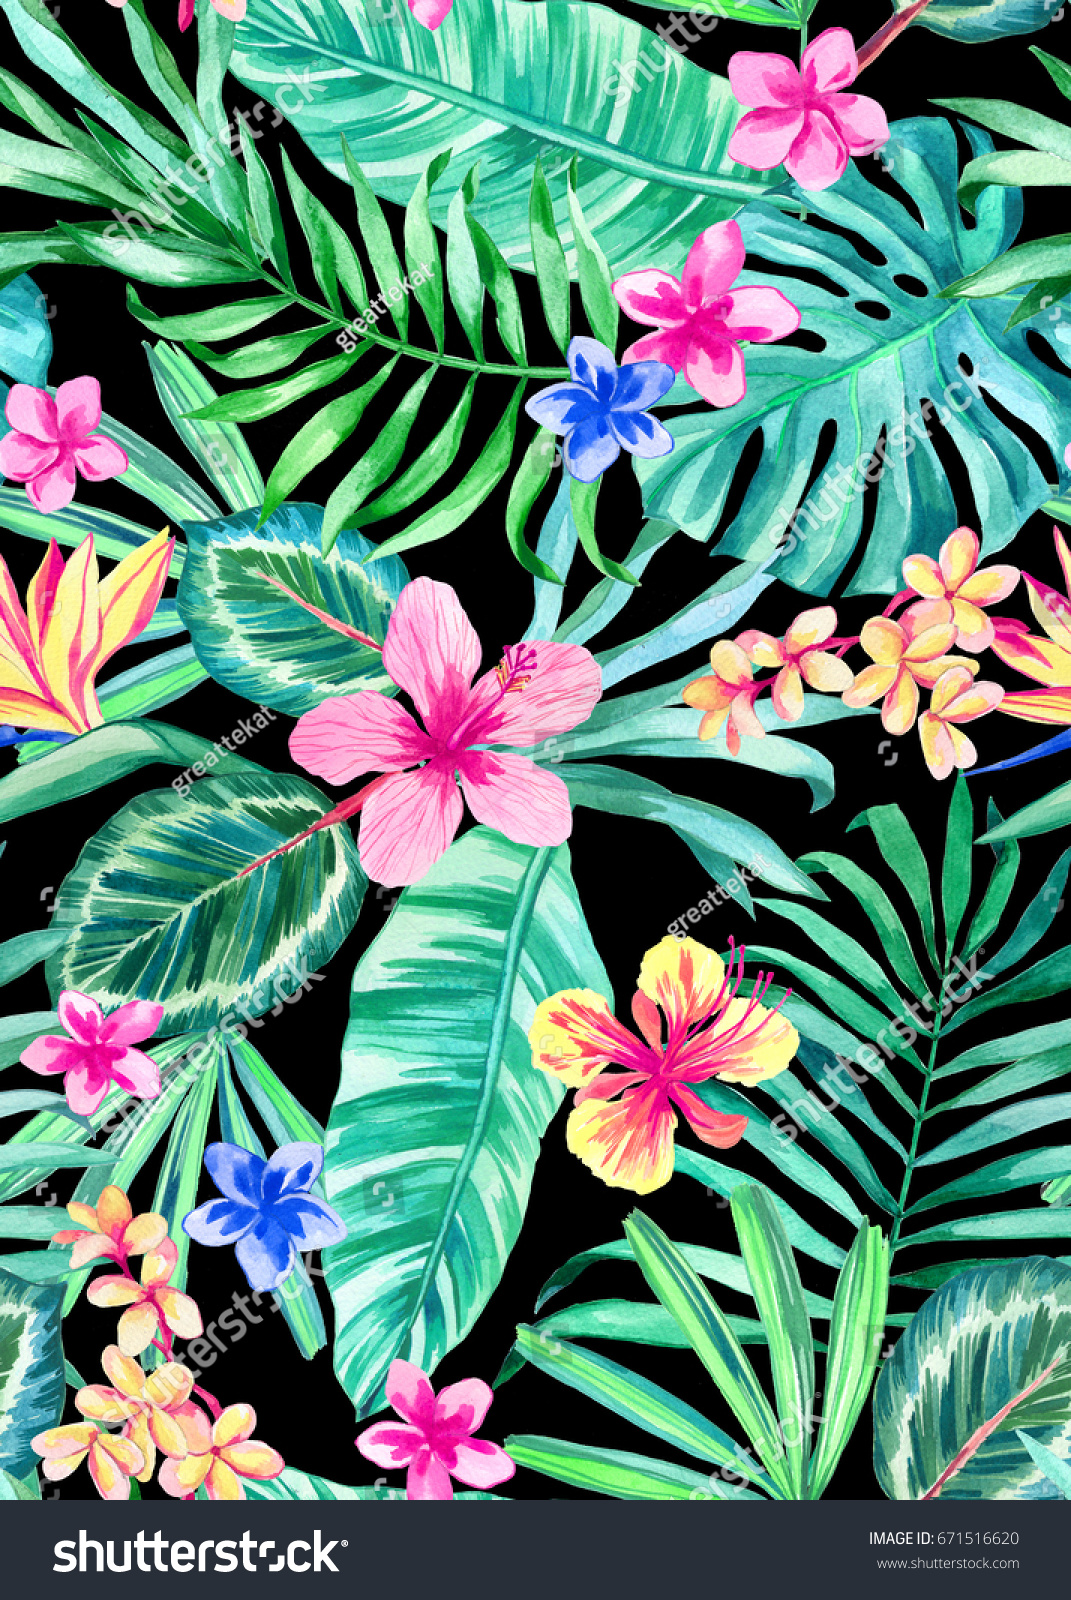 シームレスな手描きの水彩の熱帯柄 花柄の鮮やかなハワイの夏のデザイン ハイビスカス プルメリア フランジパニ の花 および熱帯の葉 のイラスト素材